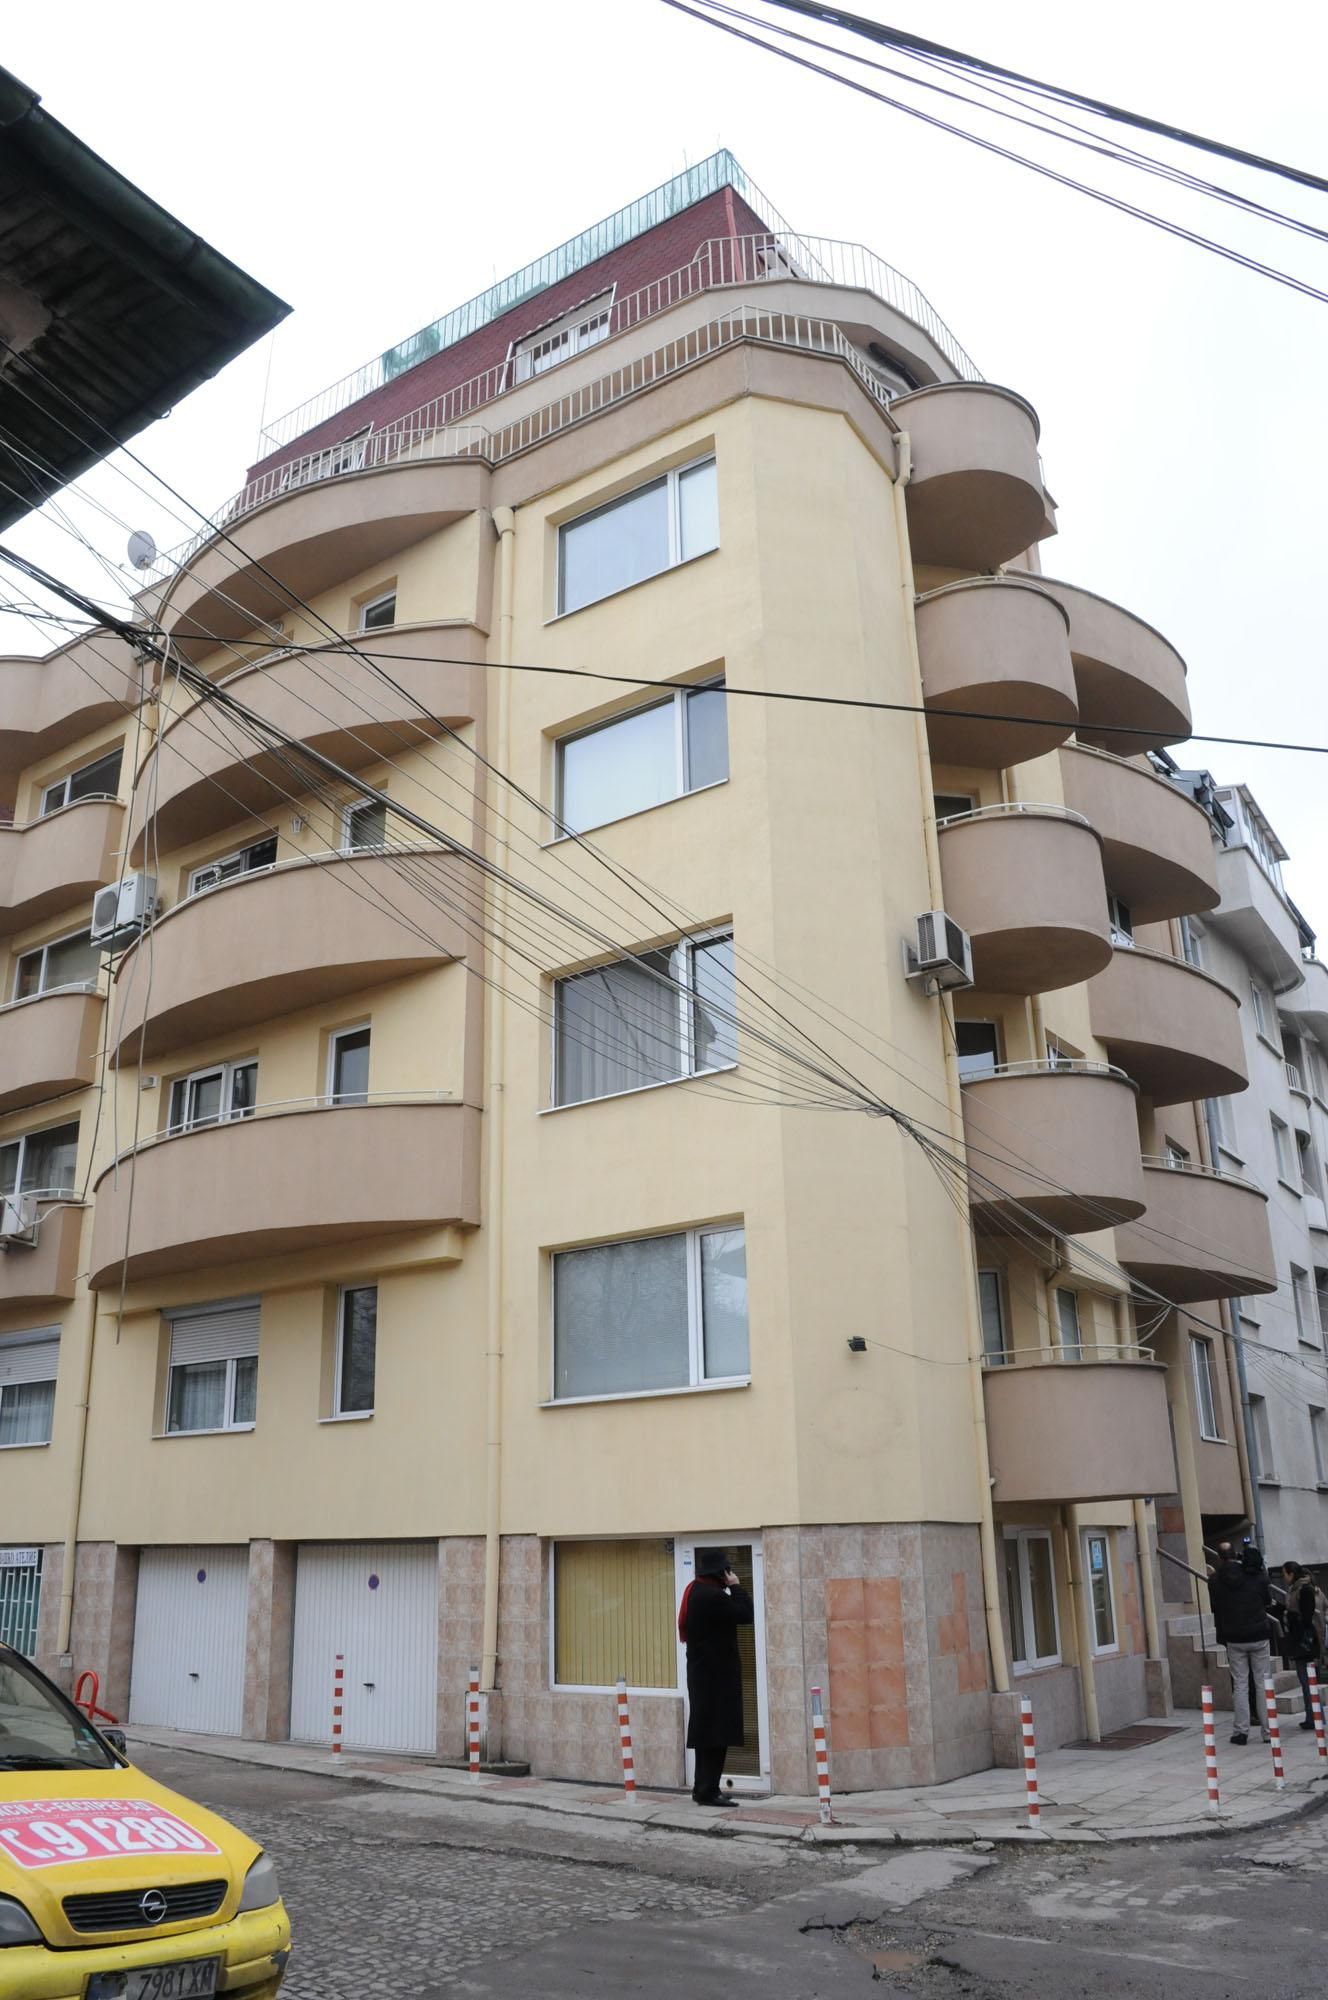 Новото строителство продължава да бълва имоти в София и по-големите градове